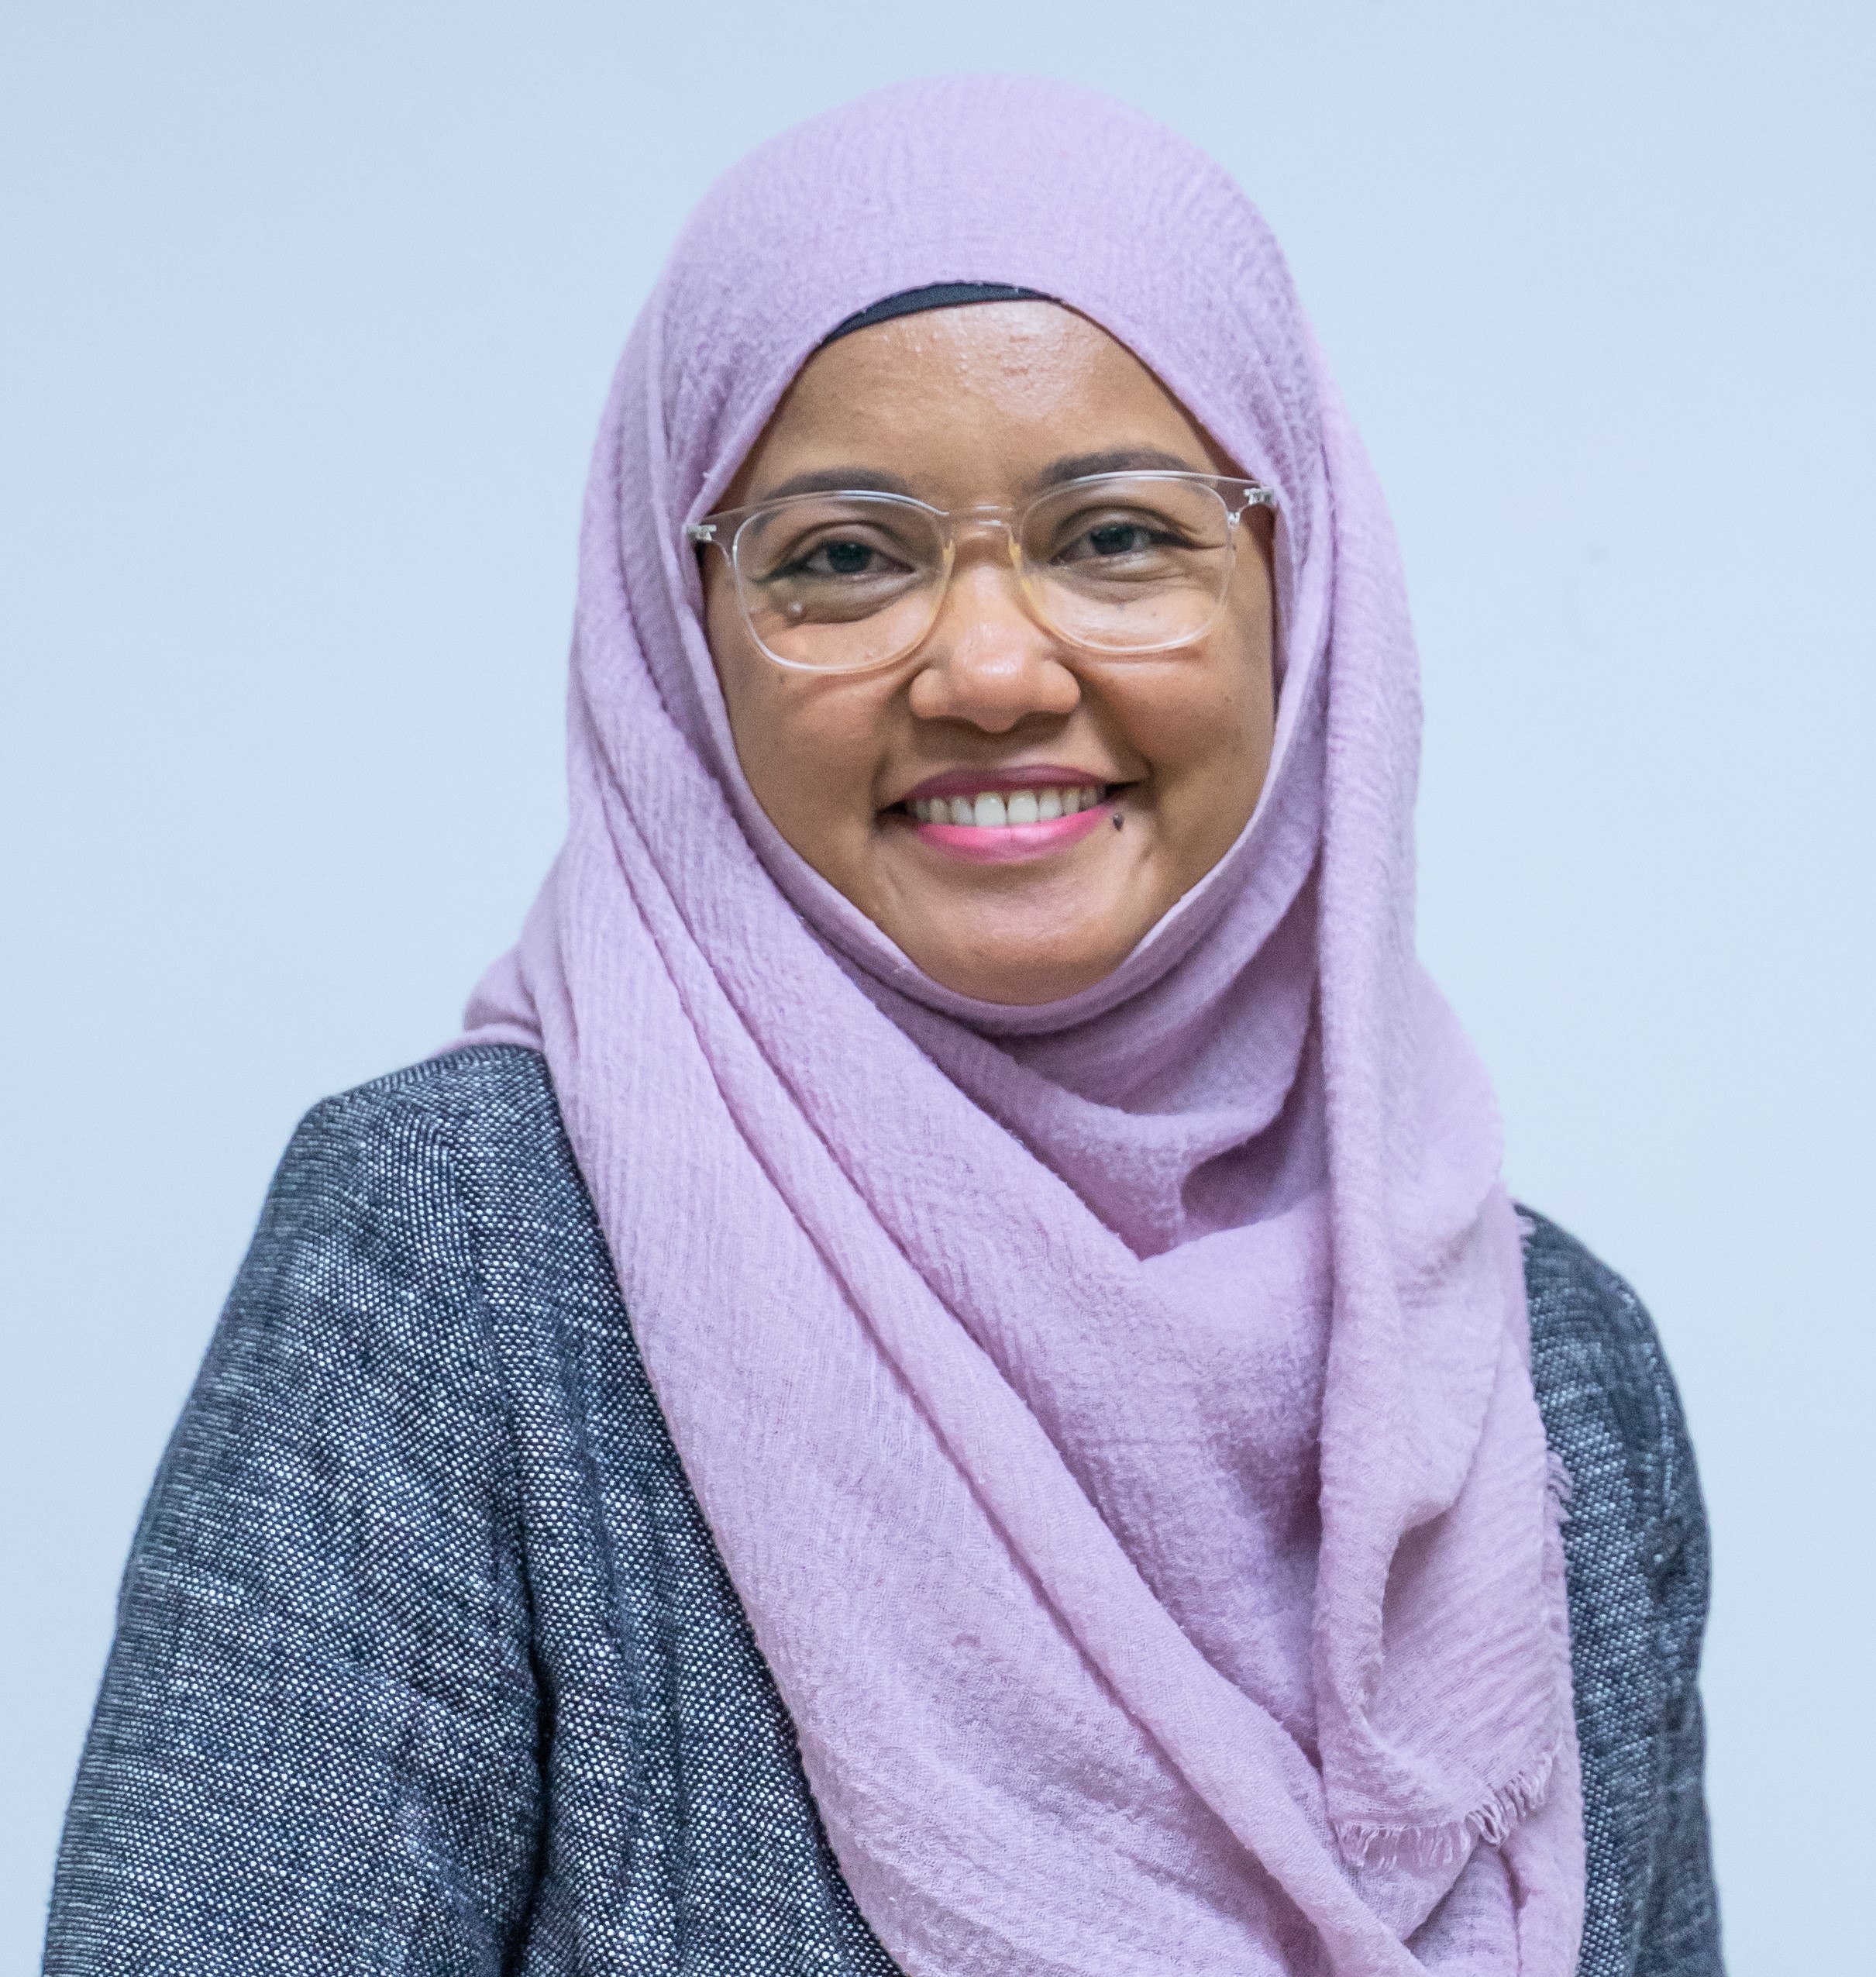 Dr. Mardiana Idayu Ahmad